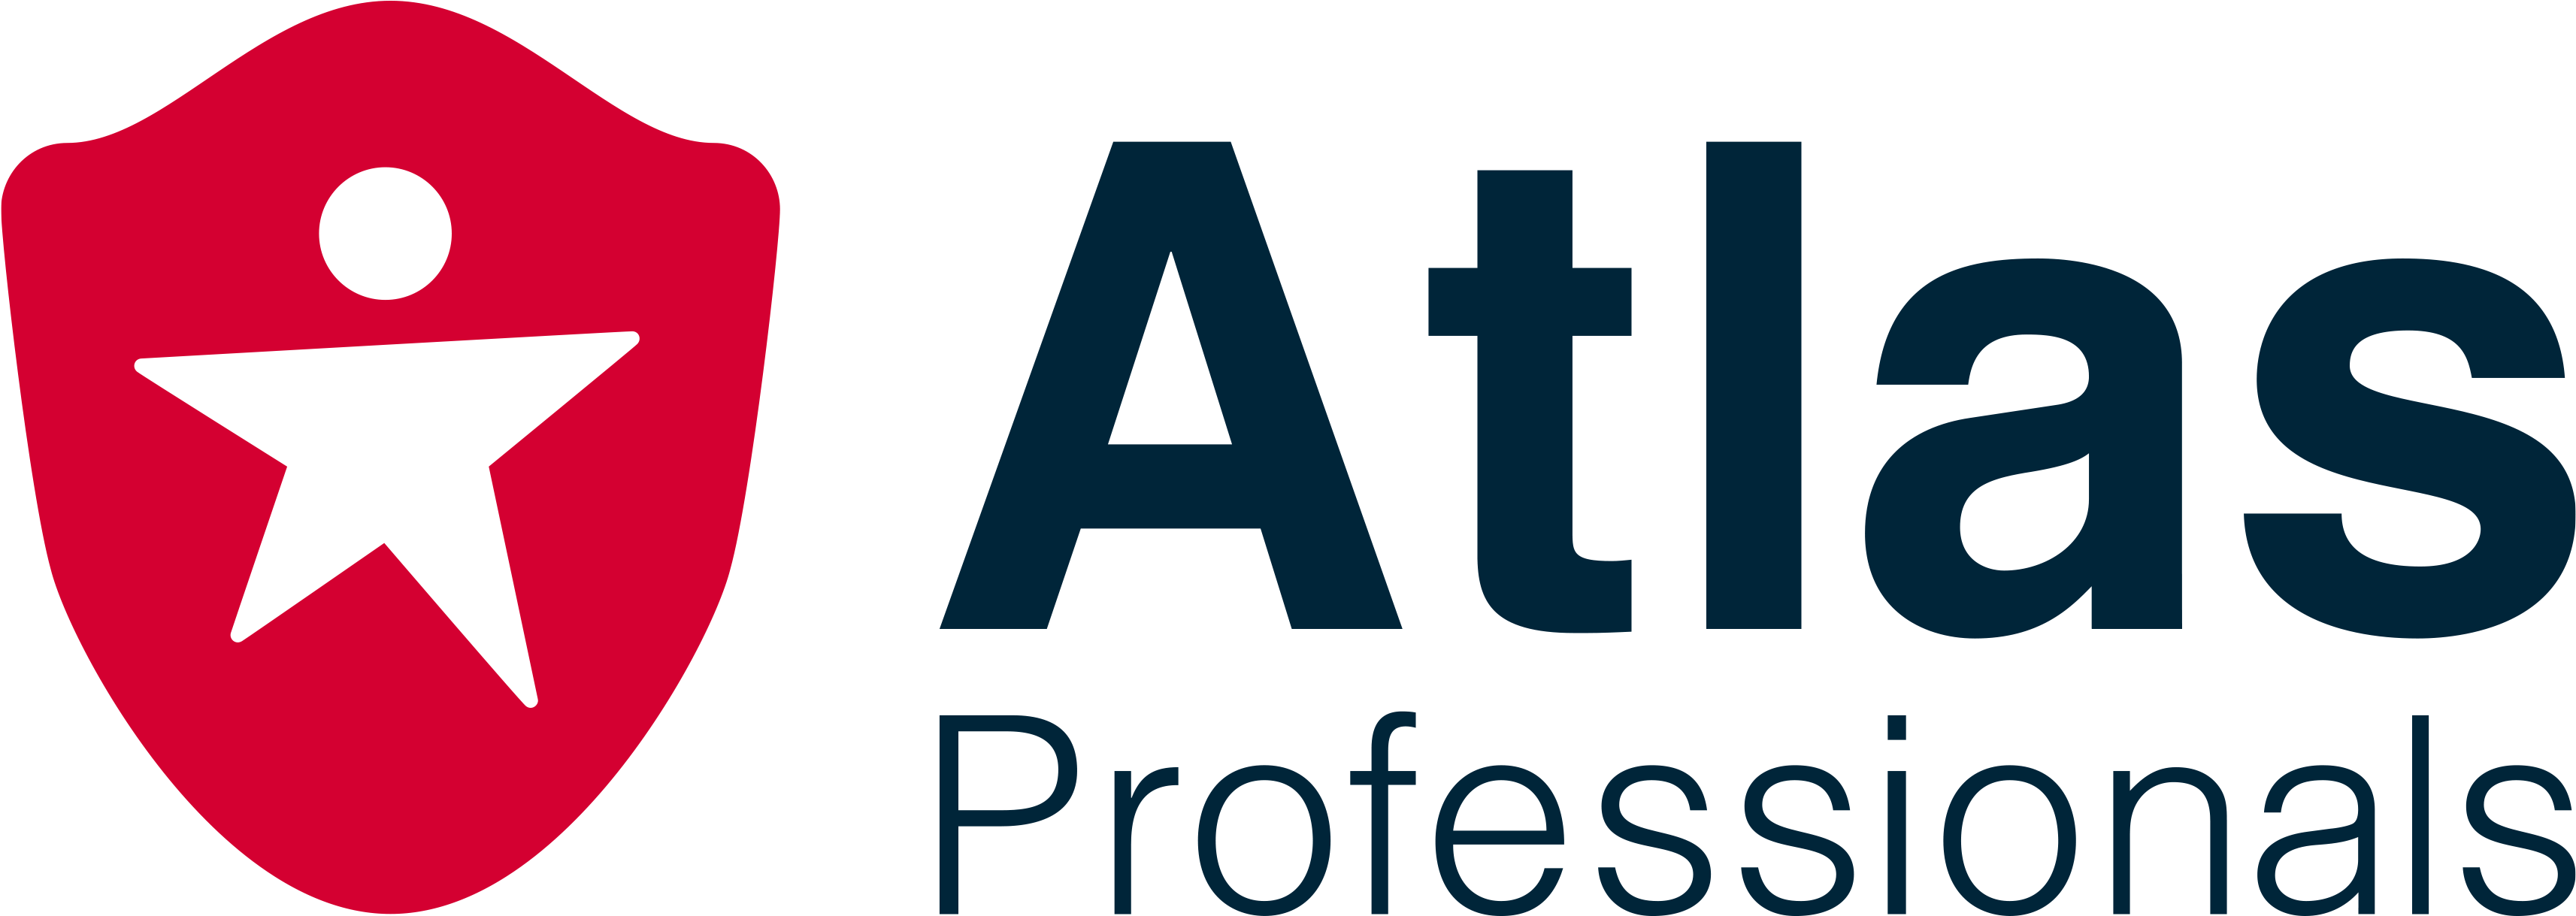 Atlas Professionals - Atlas Professionals (3500x1300)